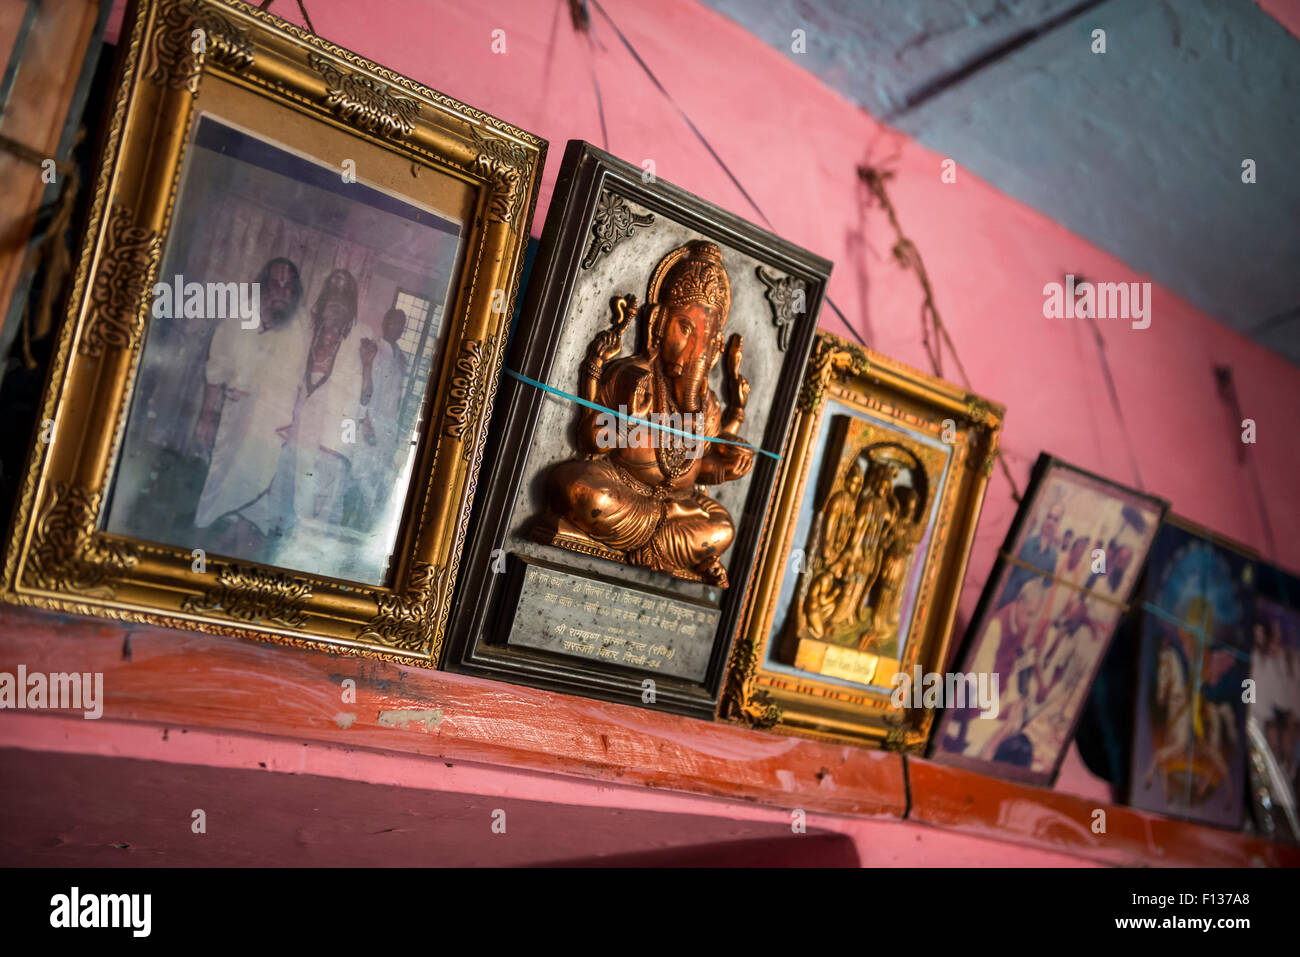 Gerahmte Fotos und Gedenktafeln in einen Ashram in Chitrakut (Chitrakut), Madhya Pradesh, Indien Stockfoto